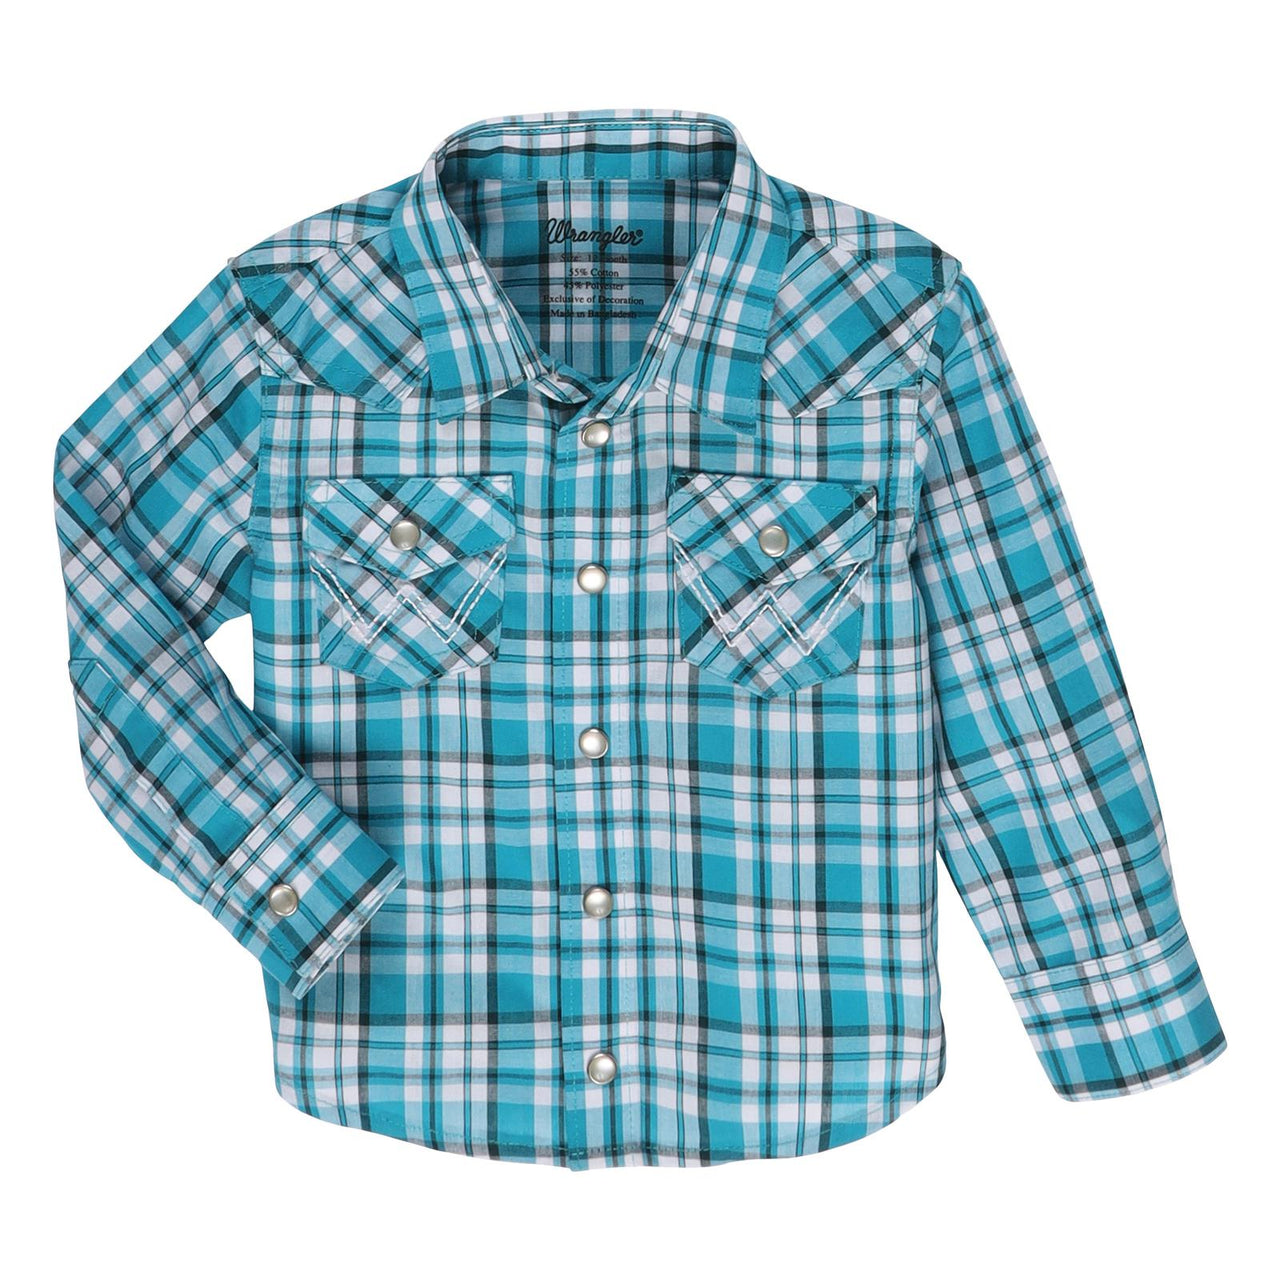 Wrangler Baby Boy Woven Shirt - Teal